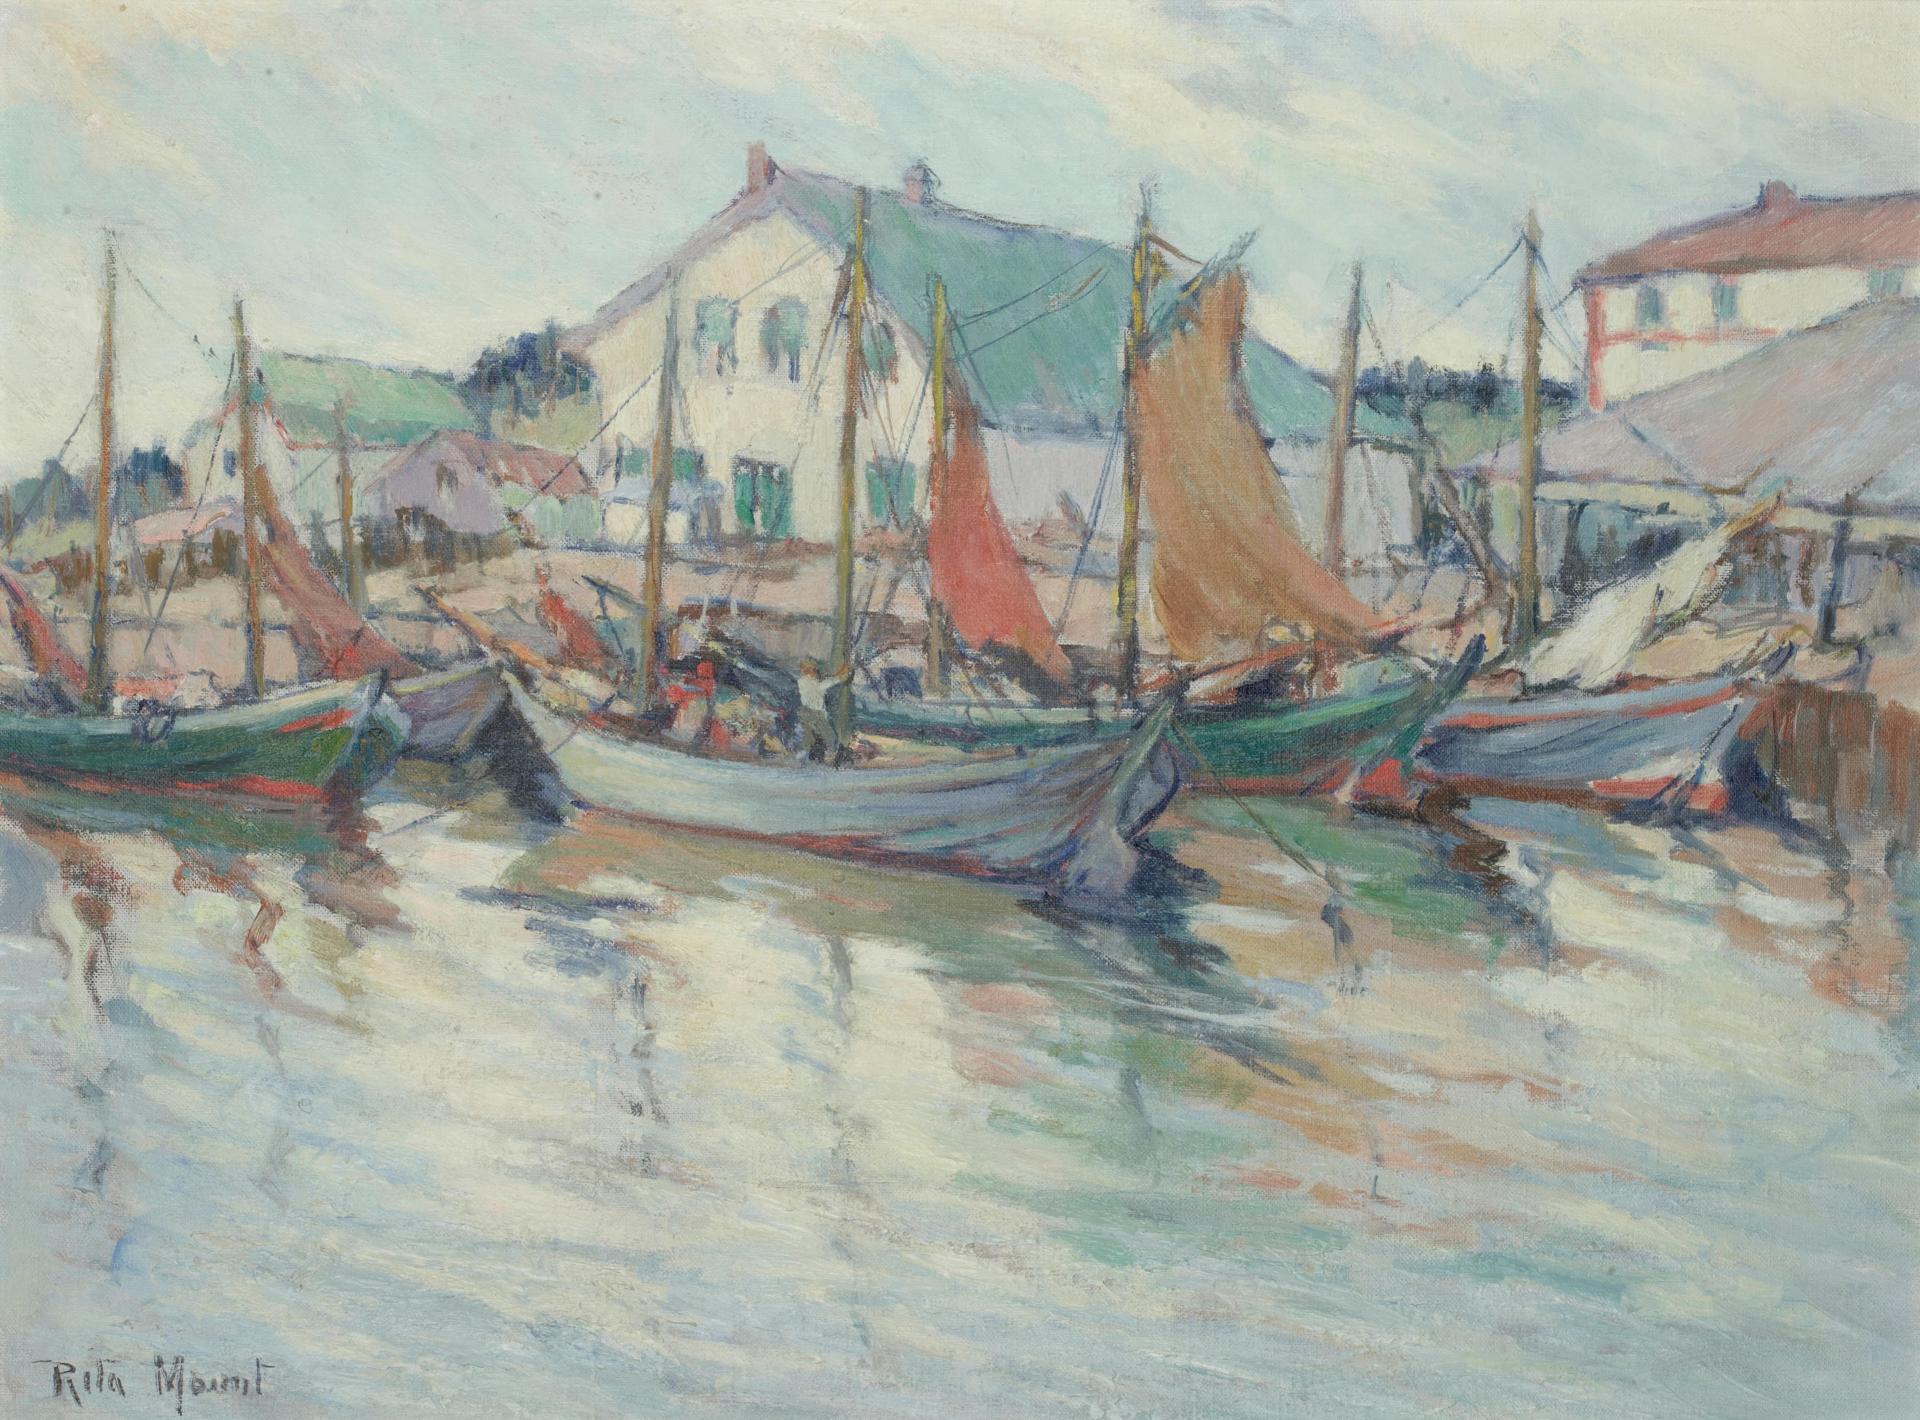 Rita Mount (1888-1967) - Boats at a dock